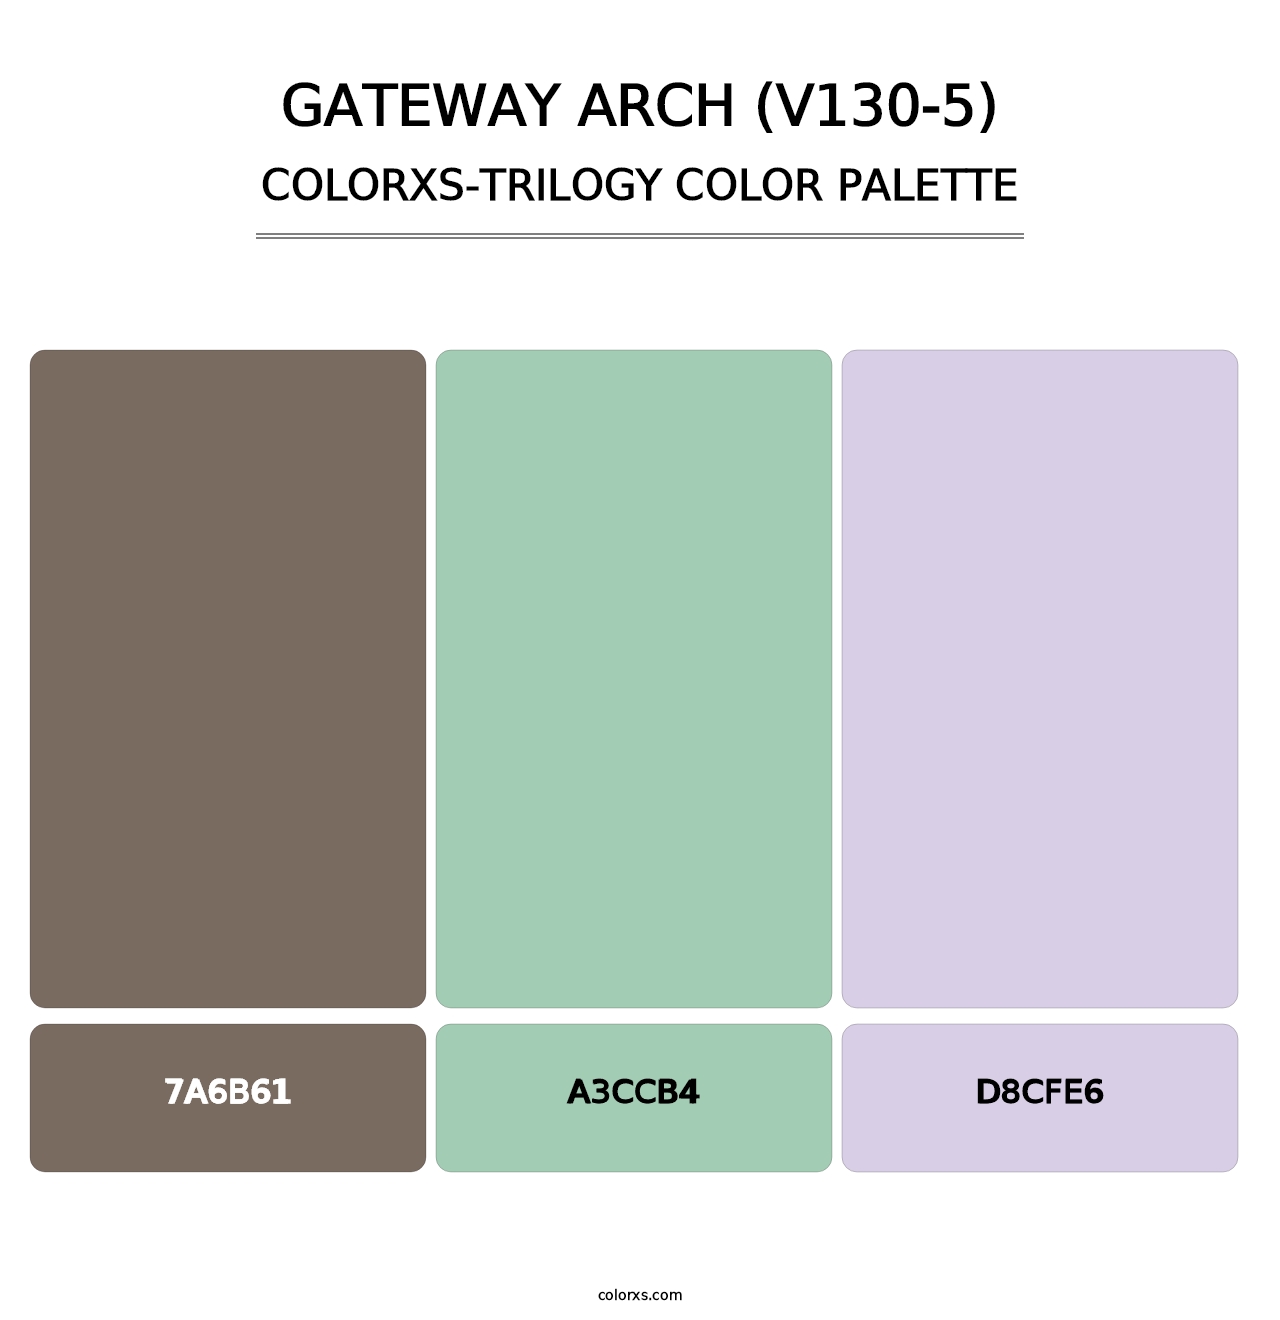 Gateway Arch (V130-5) - Colorxs Trilogy Palette